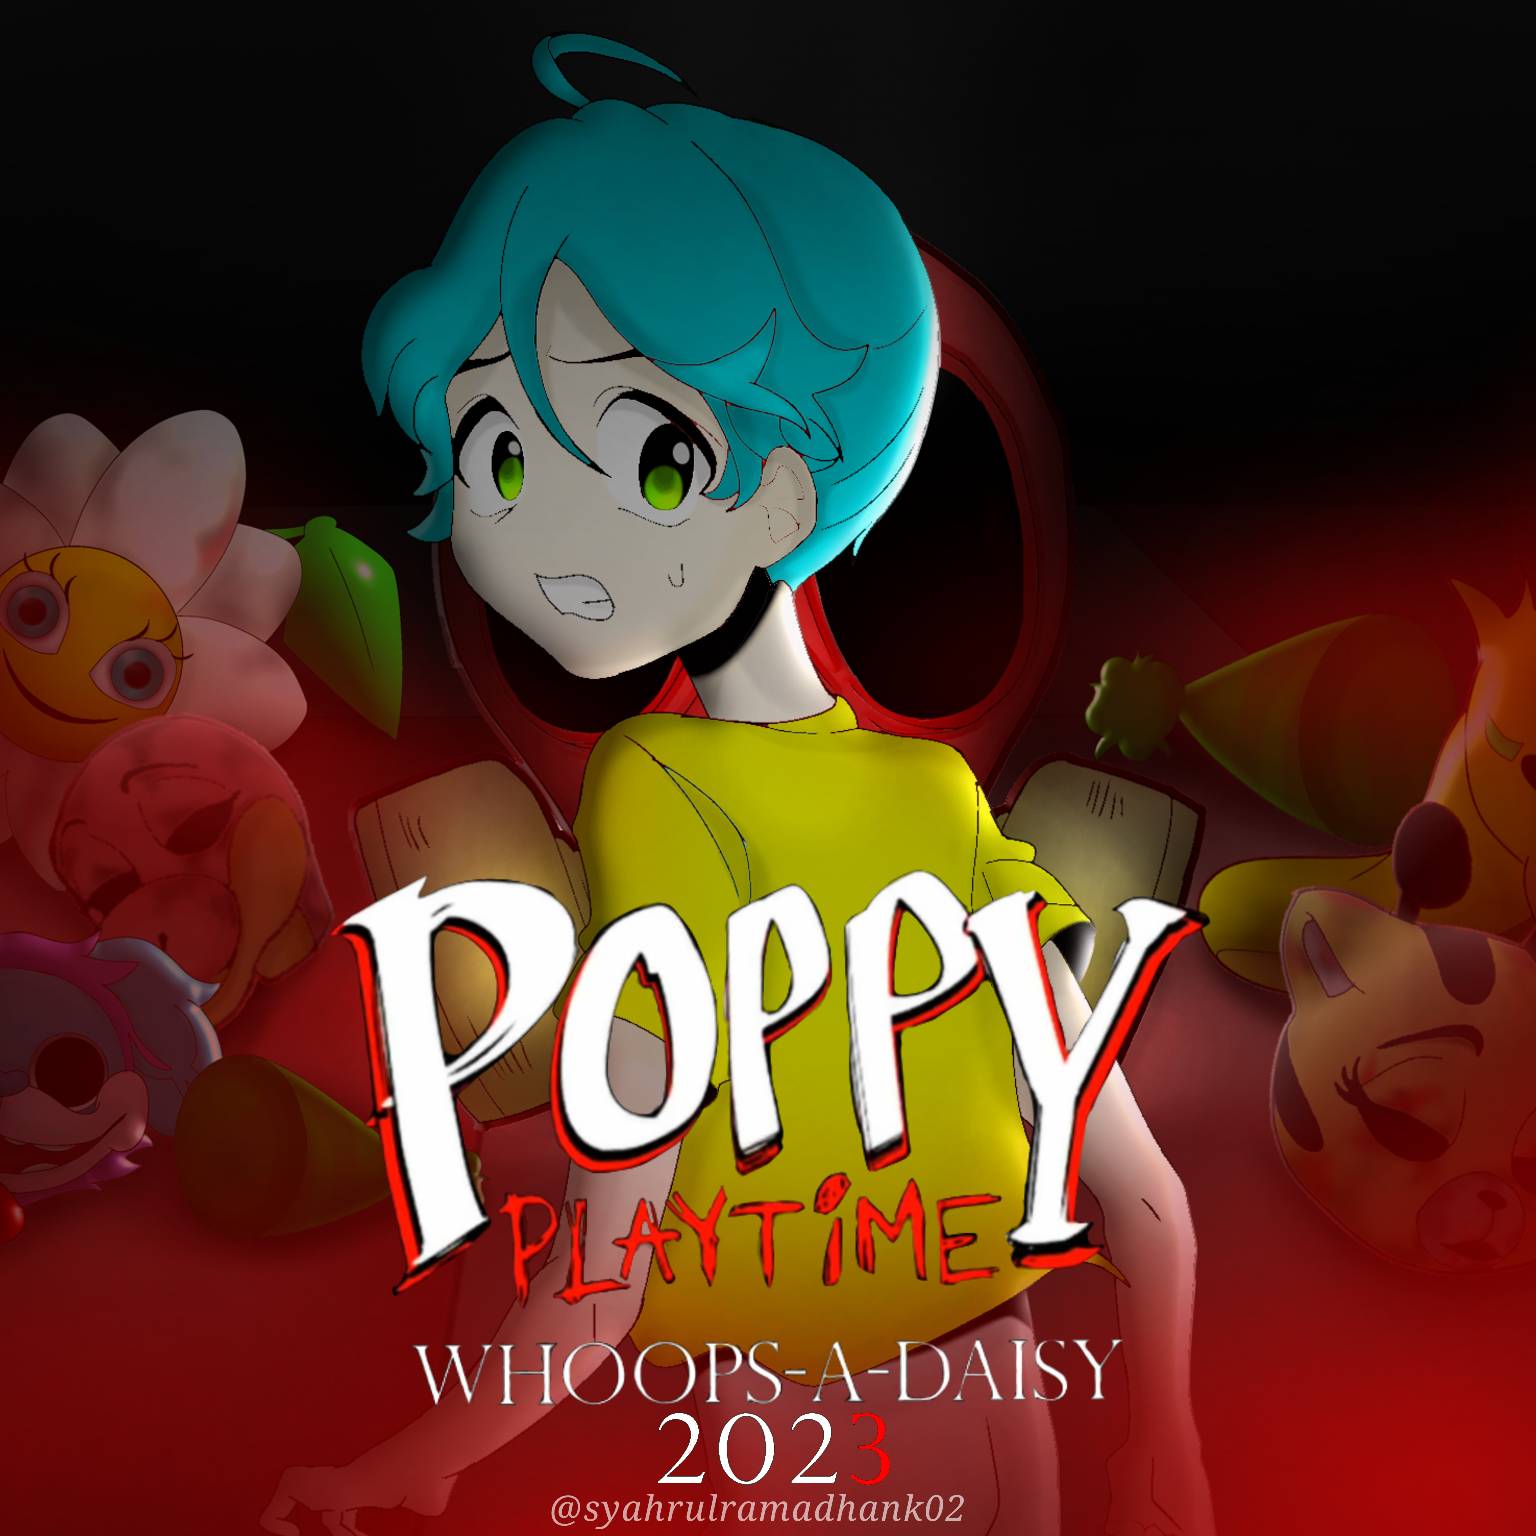 Poppy Playtime: Chapter 3 - Teaser Trailer 2